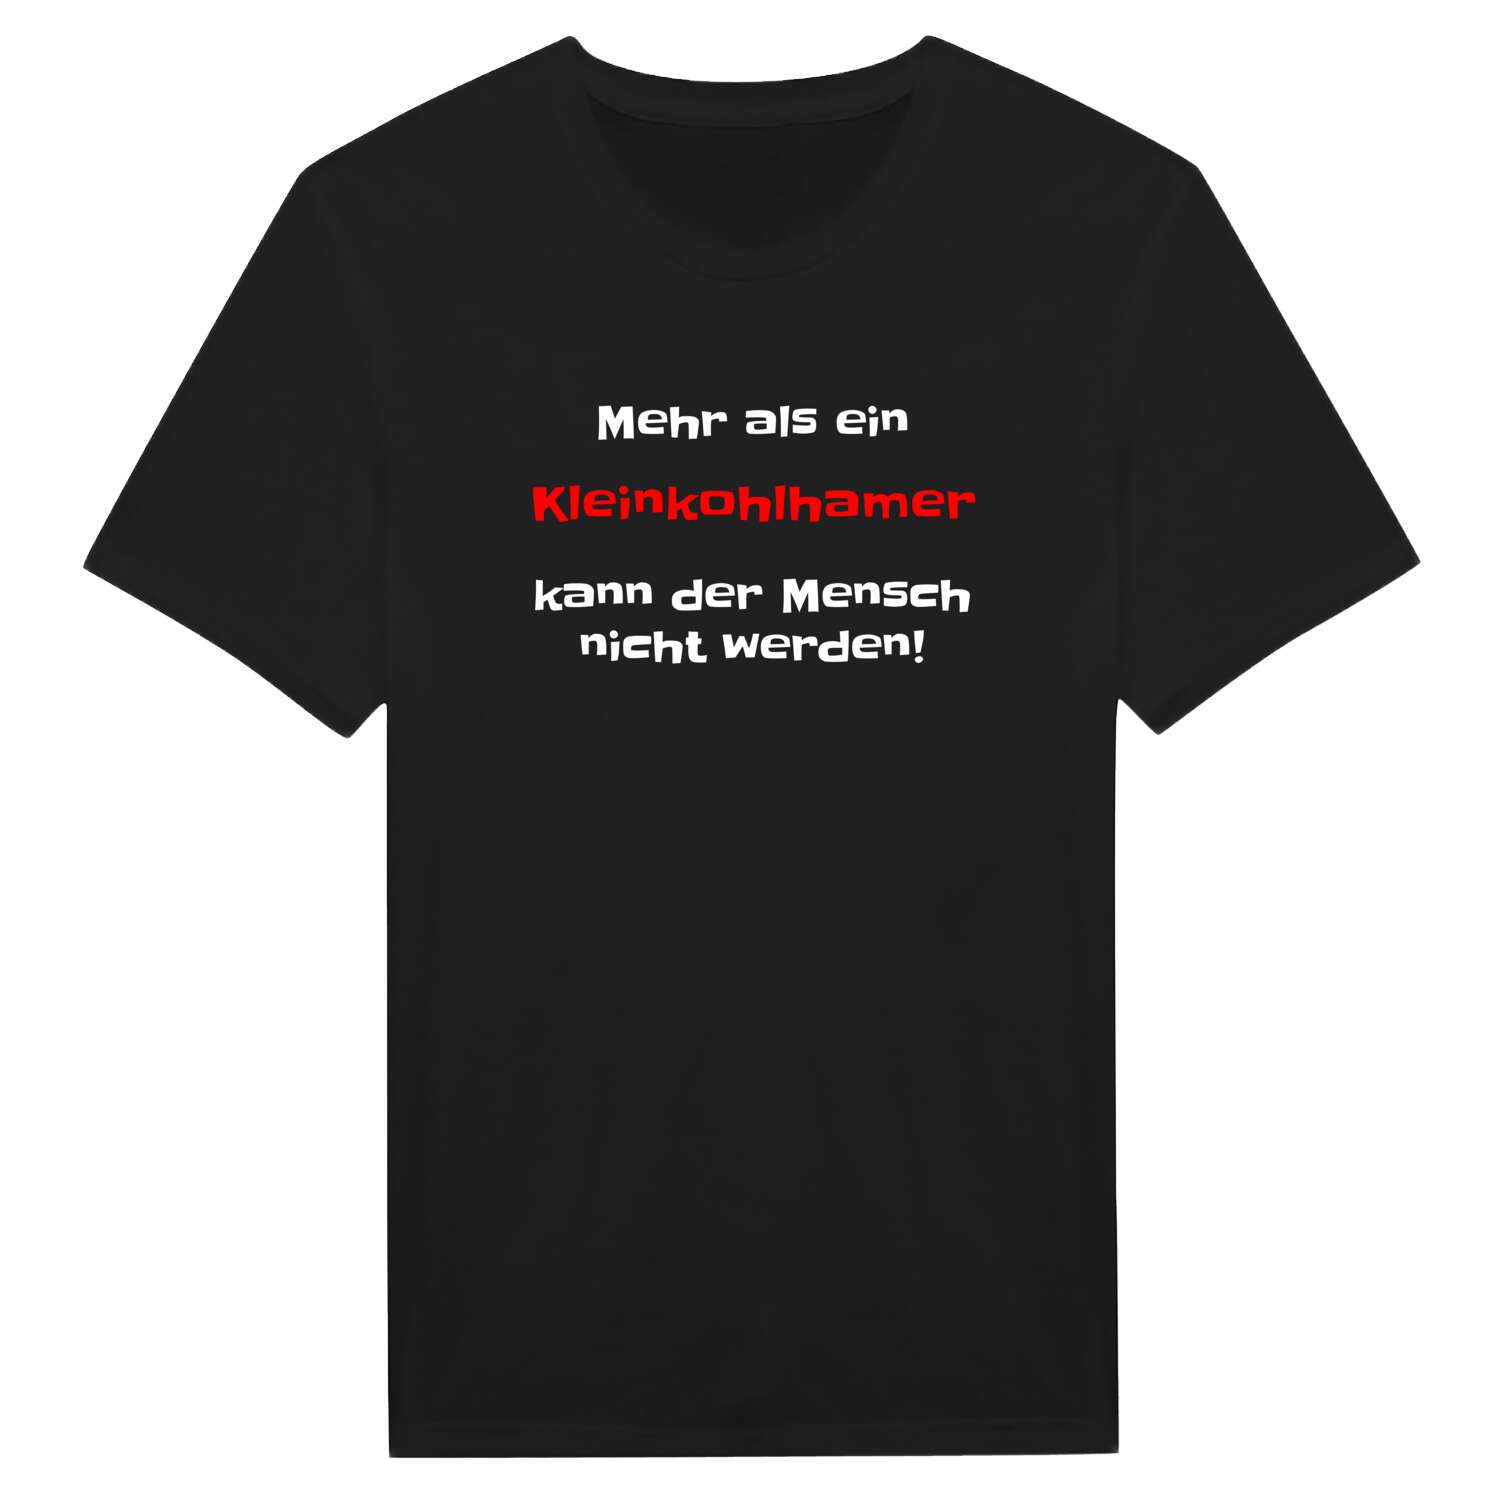 Kleinkohlham T-Shirt »Mehr als ein«